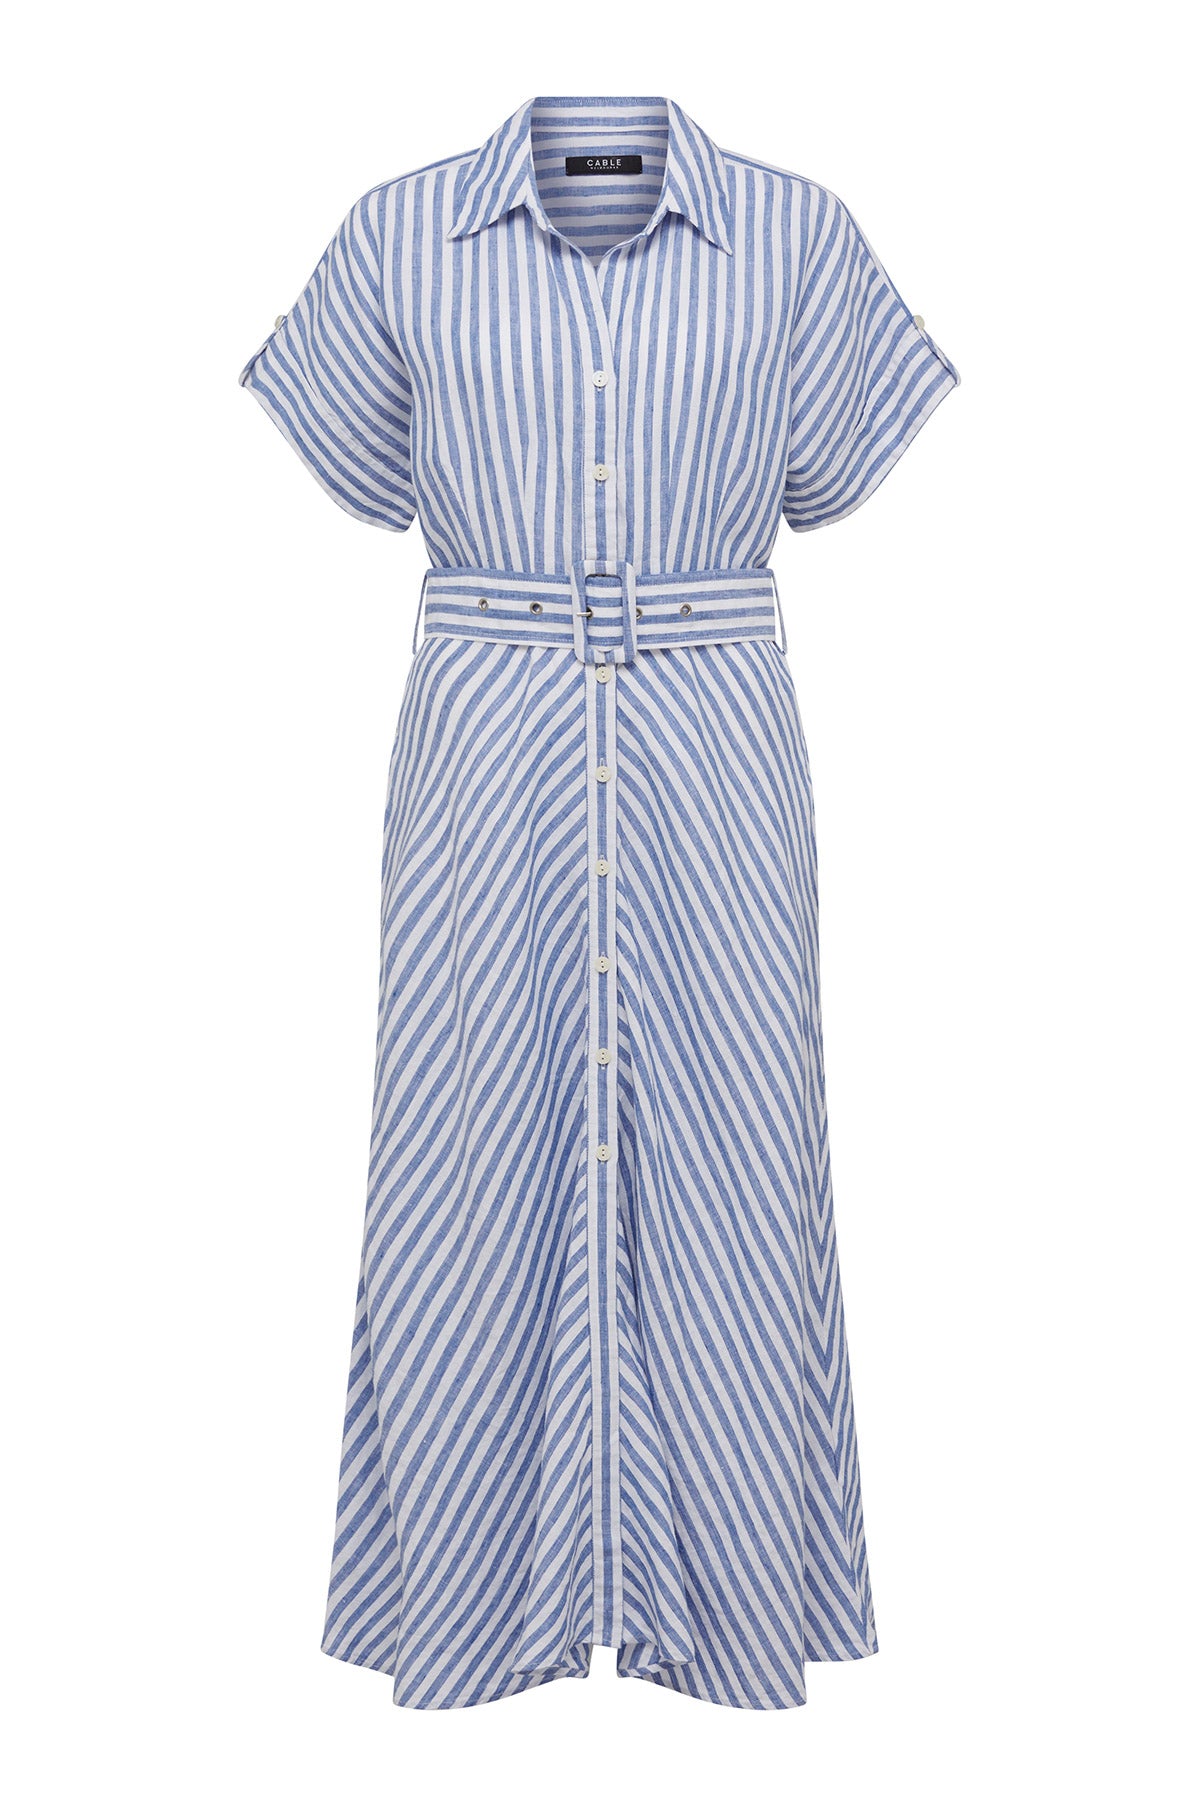 Aegean Linen Dress - Blue Stripe – Cable Melbourne